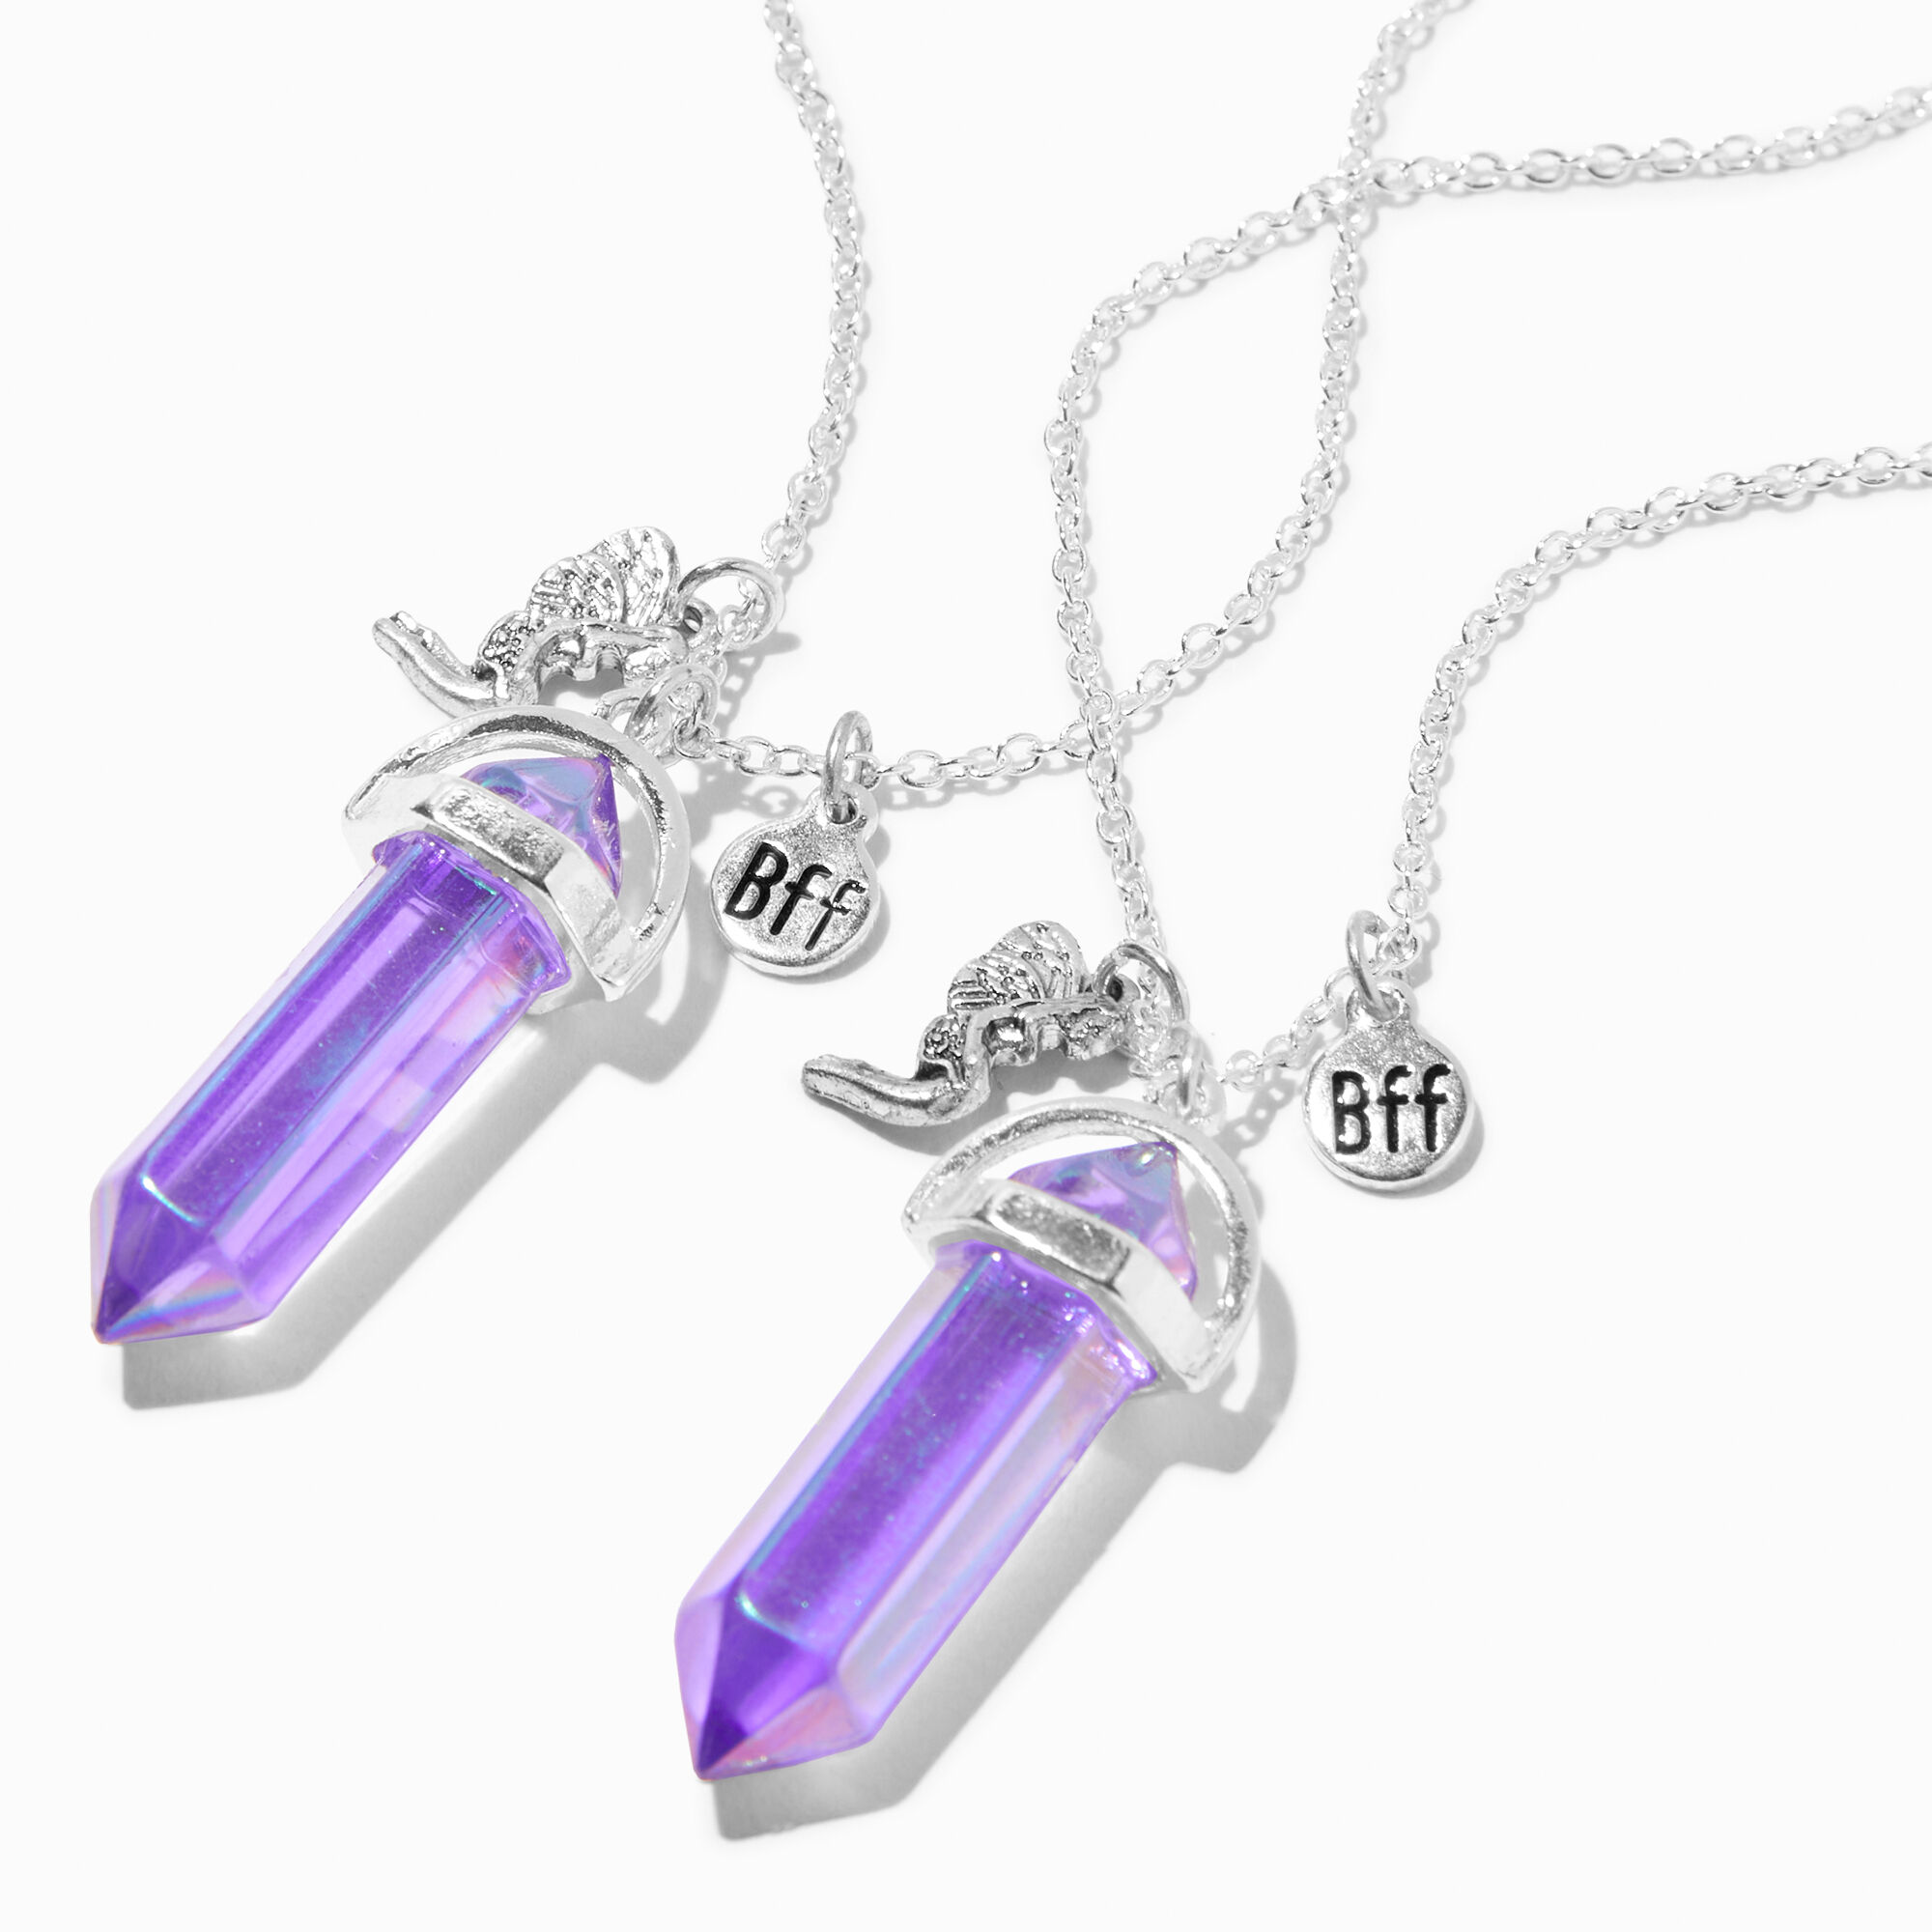 View Claires Best Friends Iridescent Mystical Gem Pendant Necklaces 2 Pack Purple information